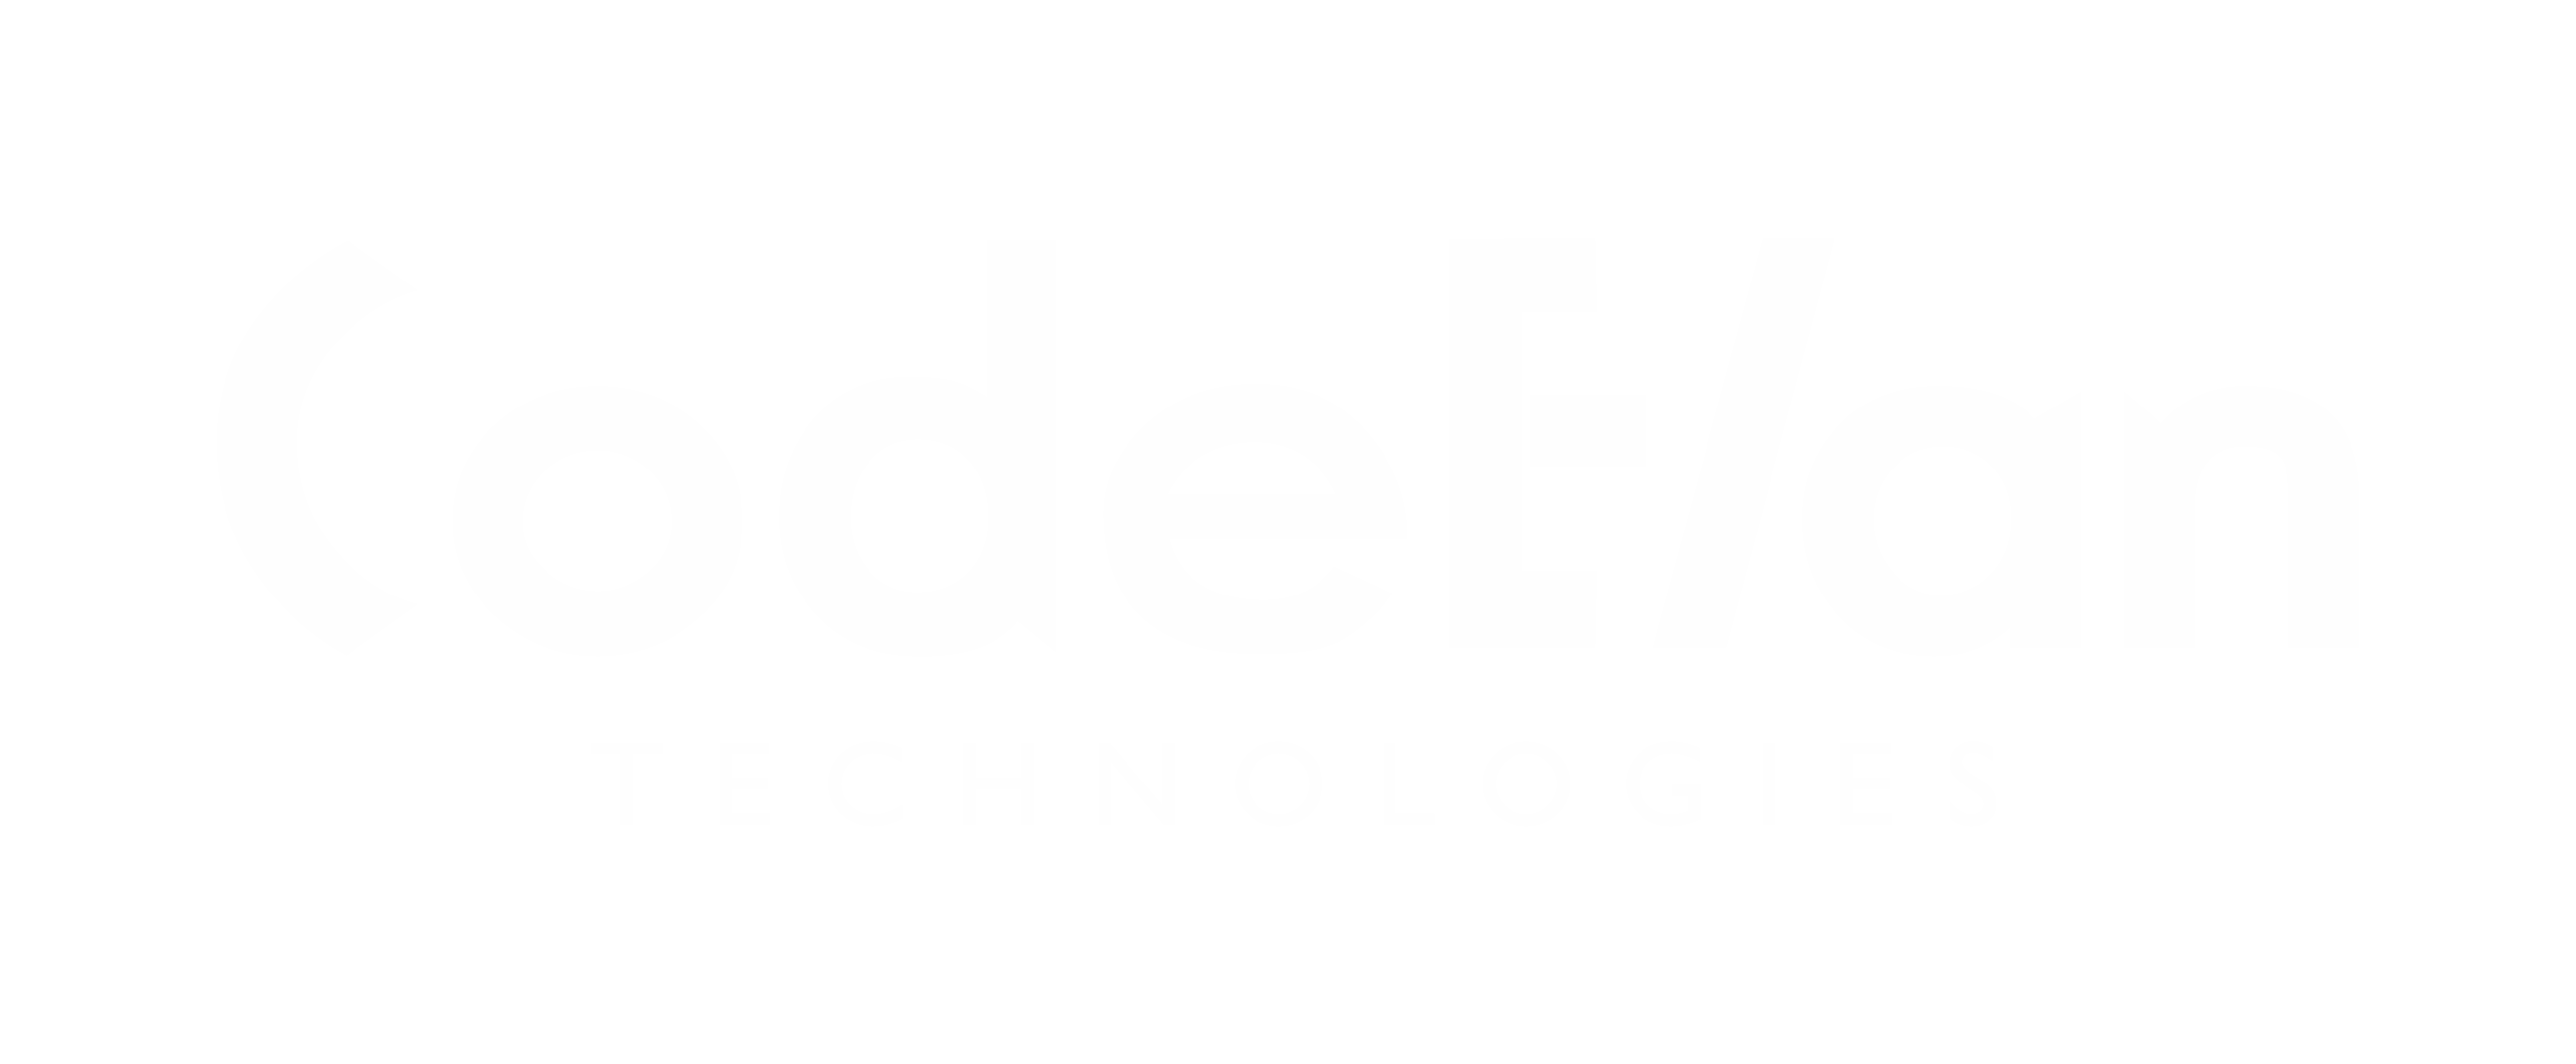 CodeElan Technologies